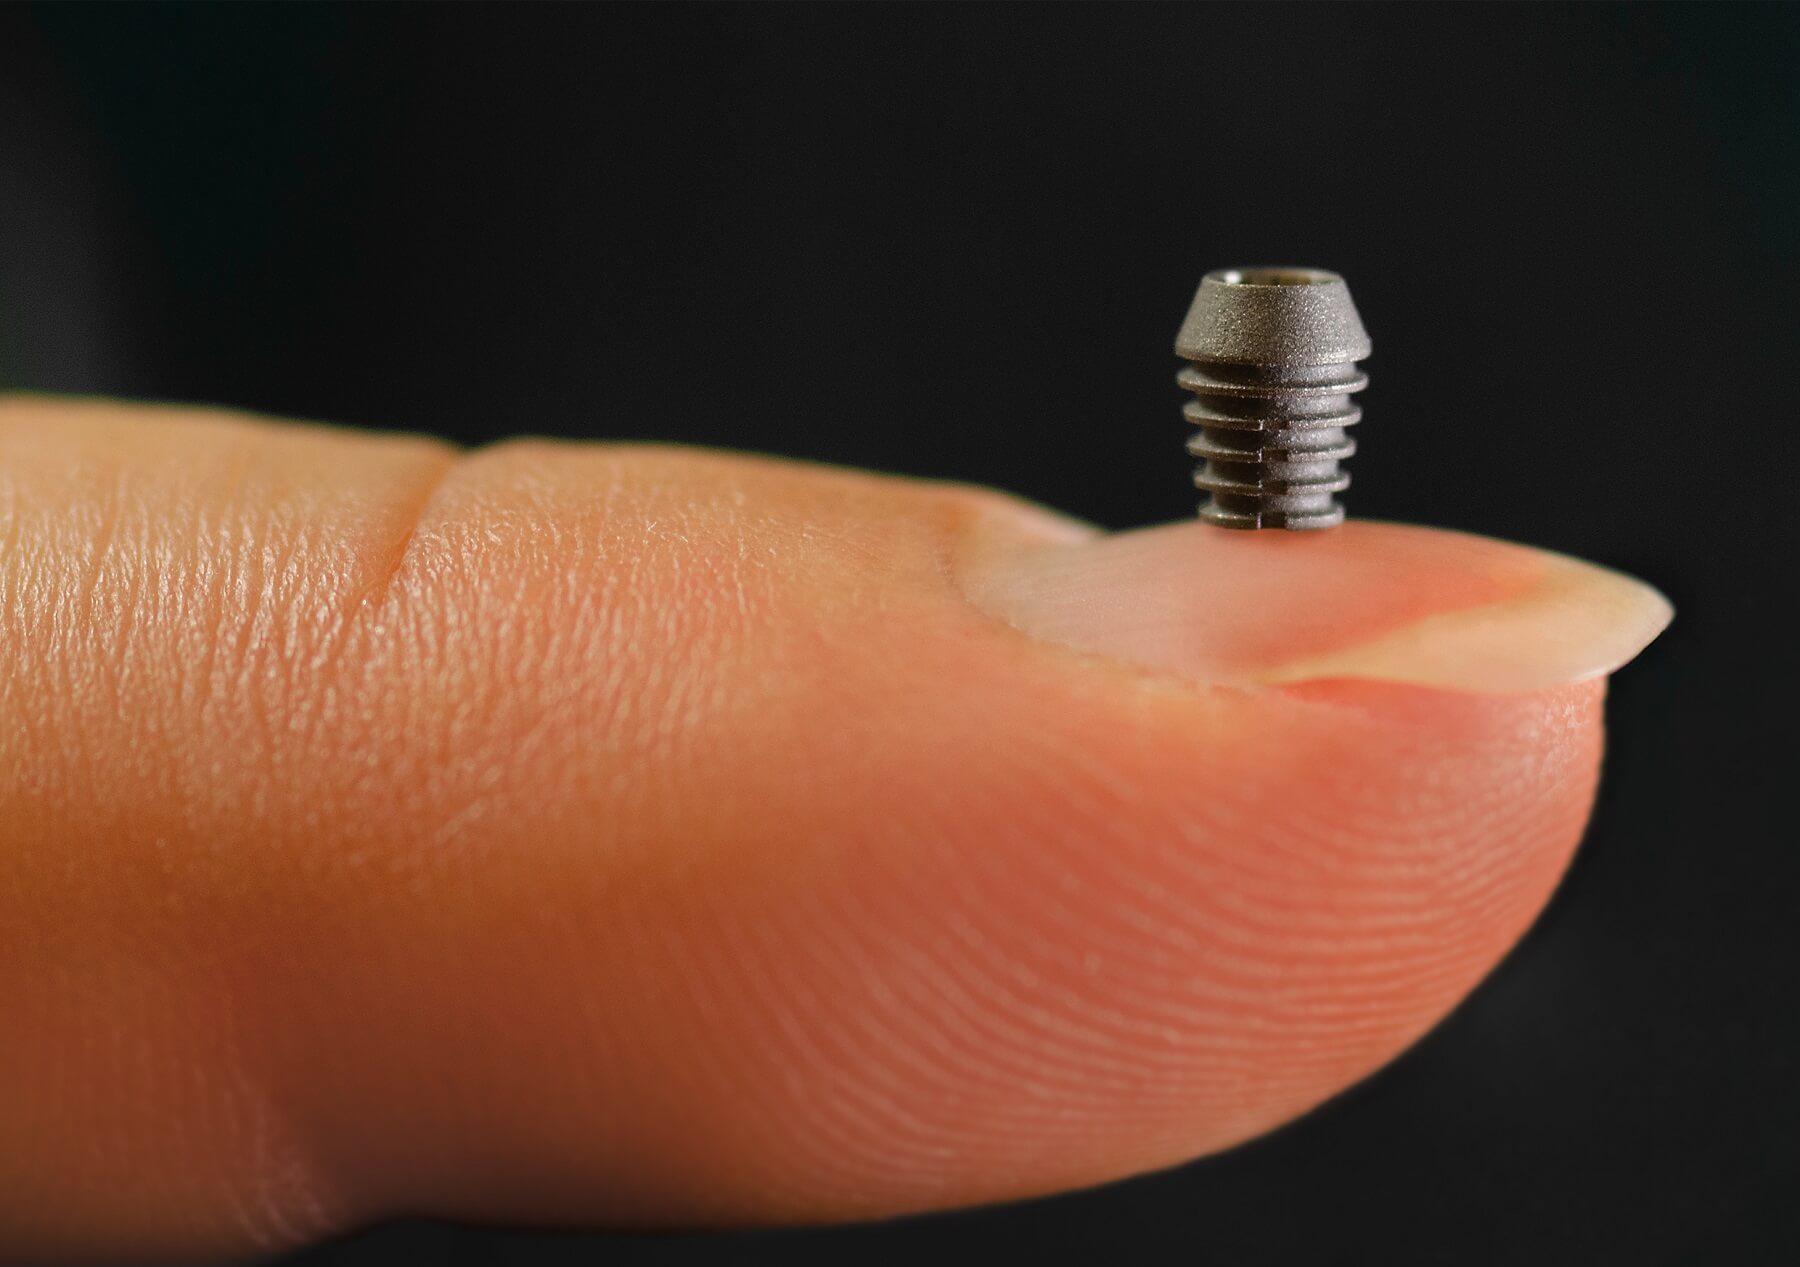 Bicon Mini-Implantate für Patienten mit wenig Kieferknochen. Bild: Bicon